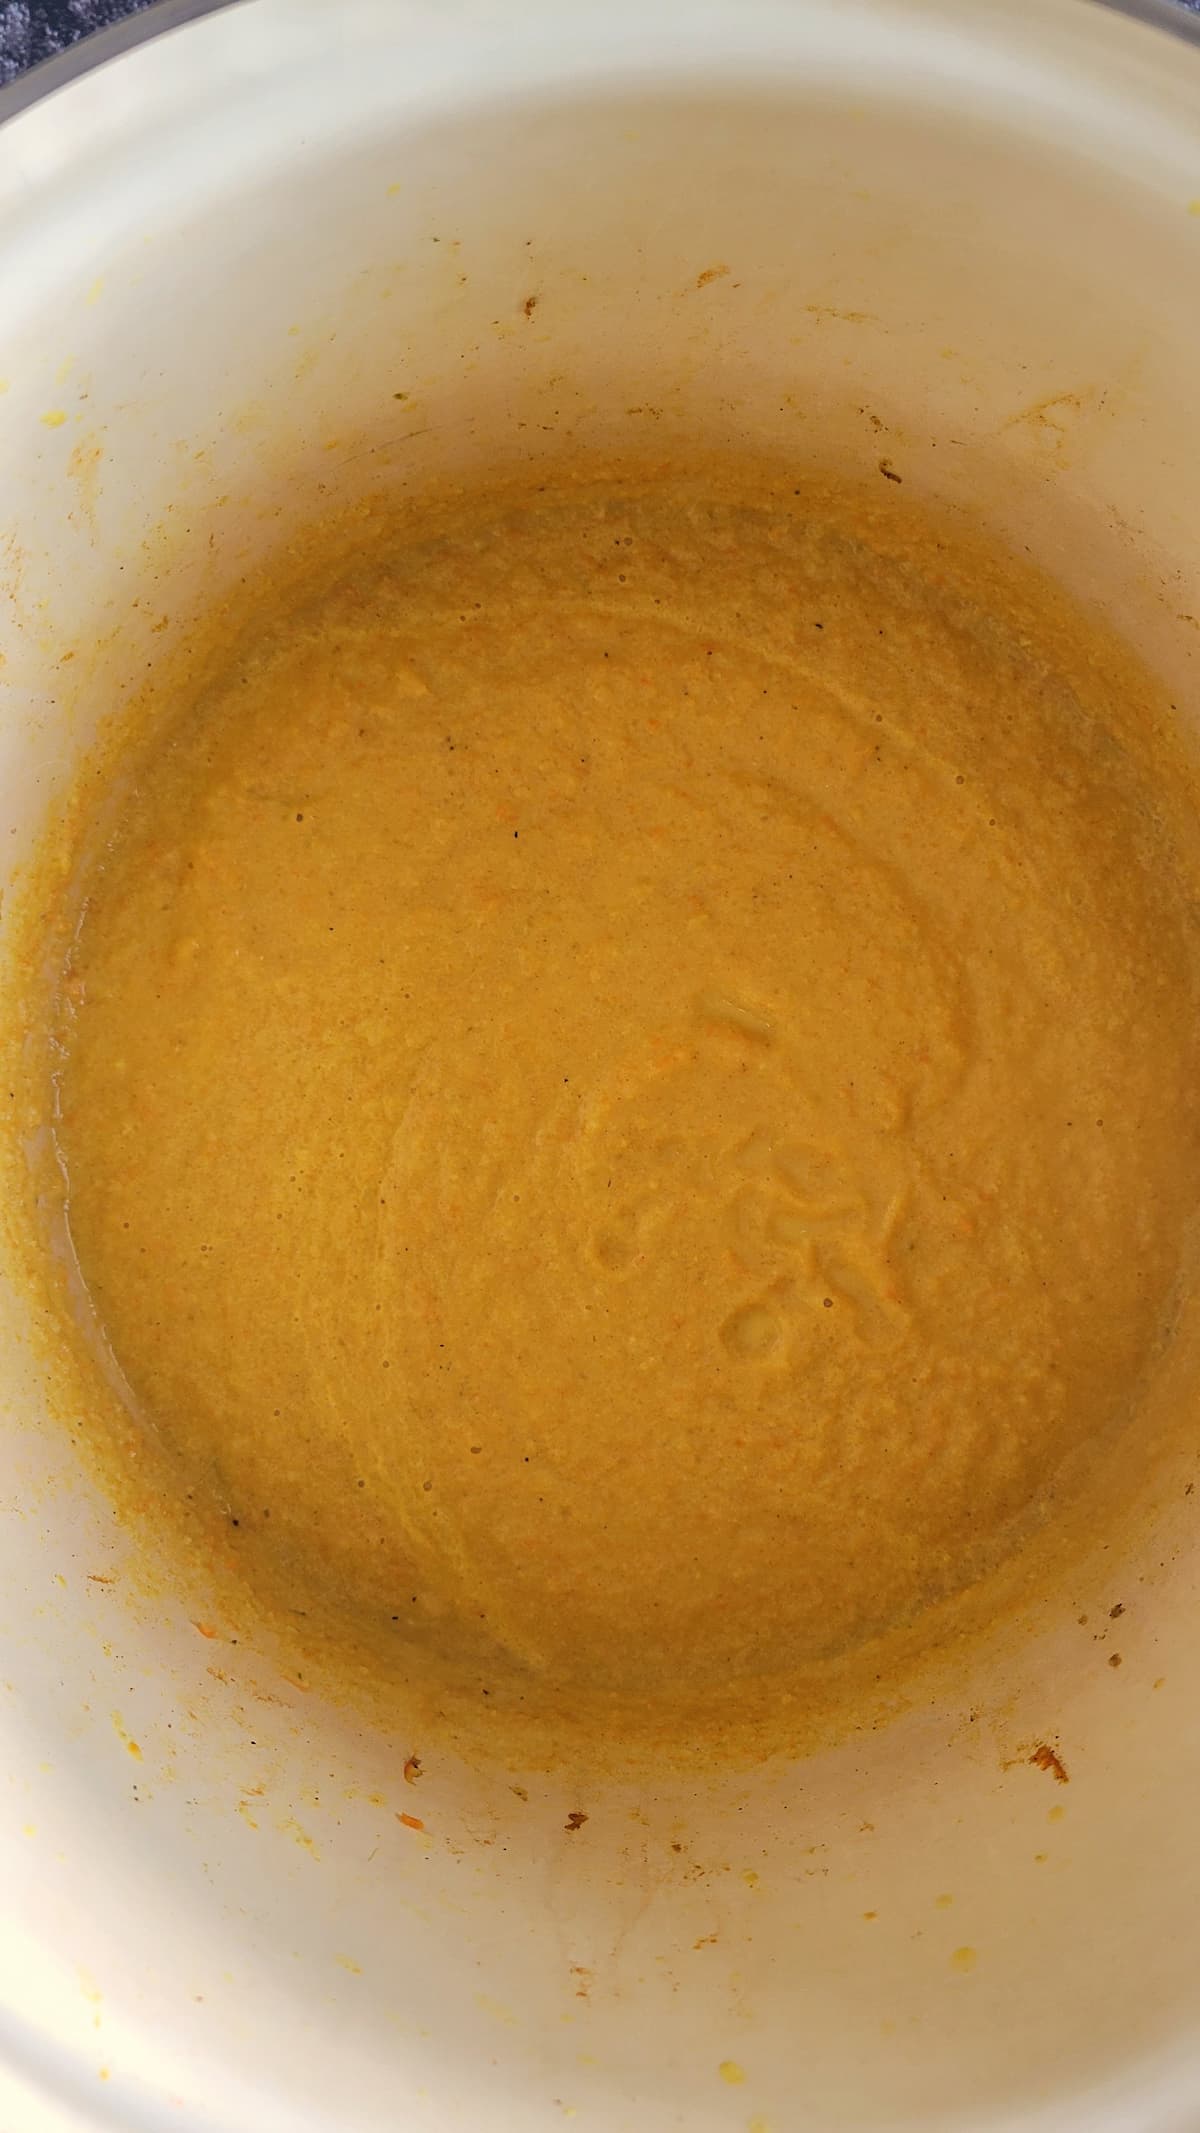 orange purée in a pot